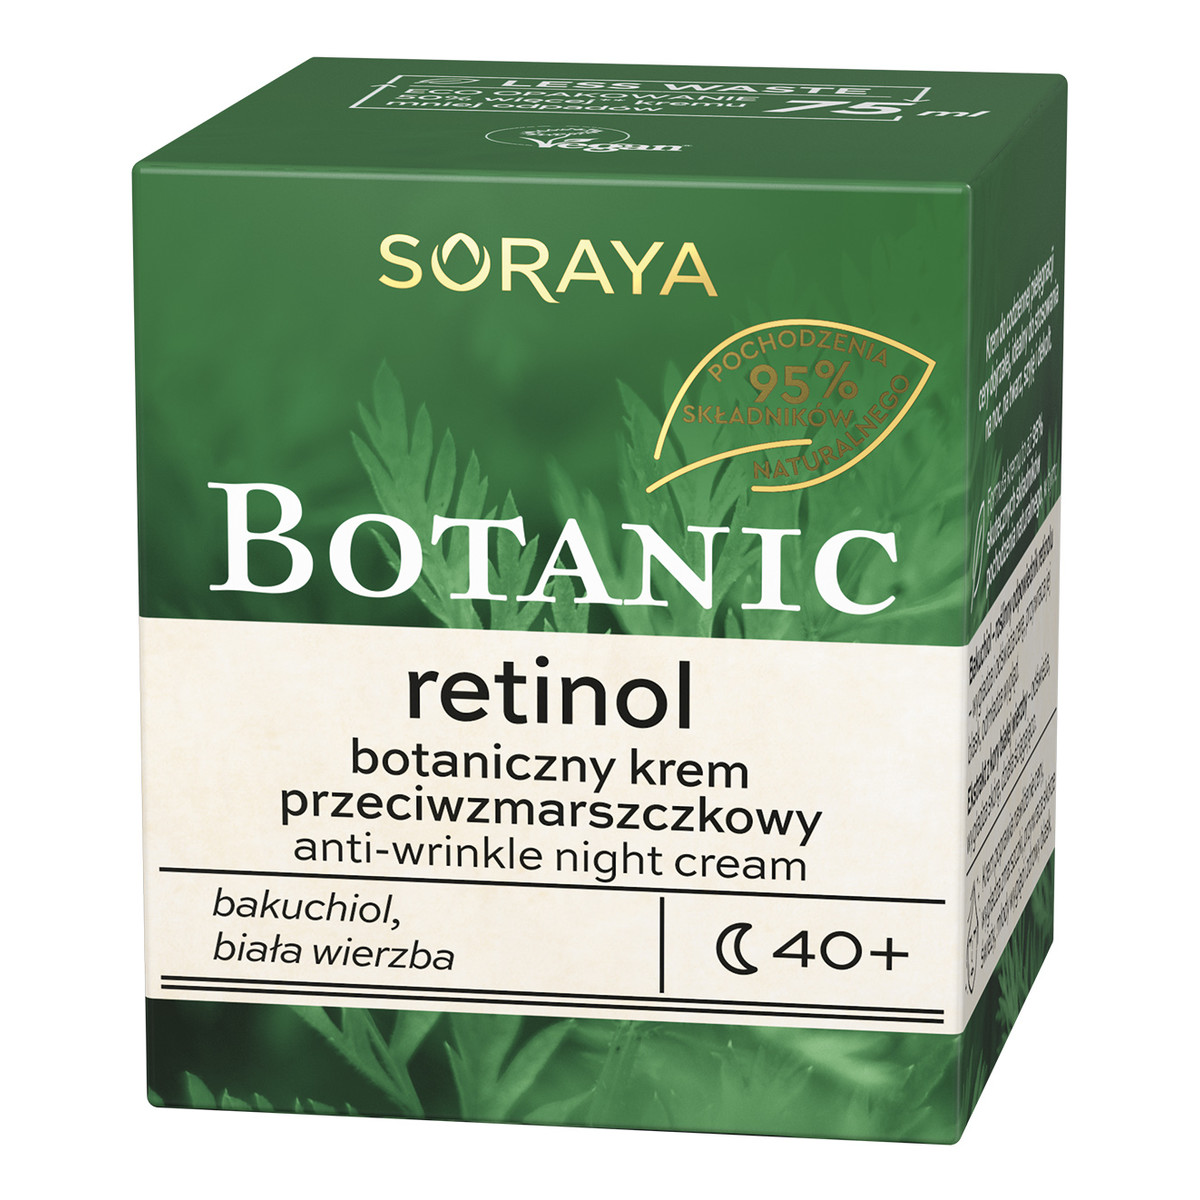 Soraya Botanic Retinol 40+ botaniczny krem przeciwzmarszczkowy na noc 75ml